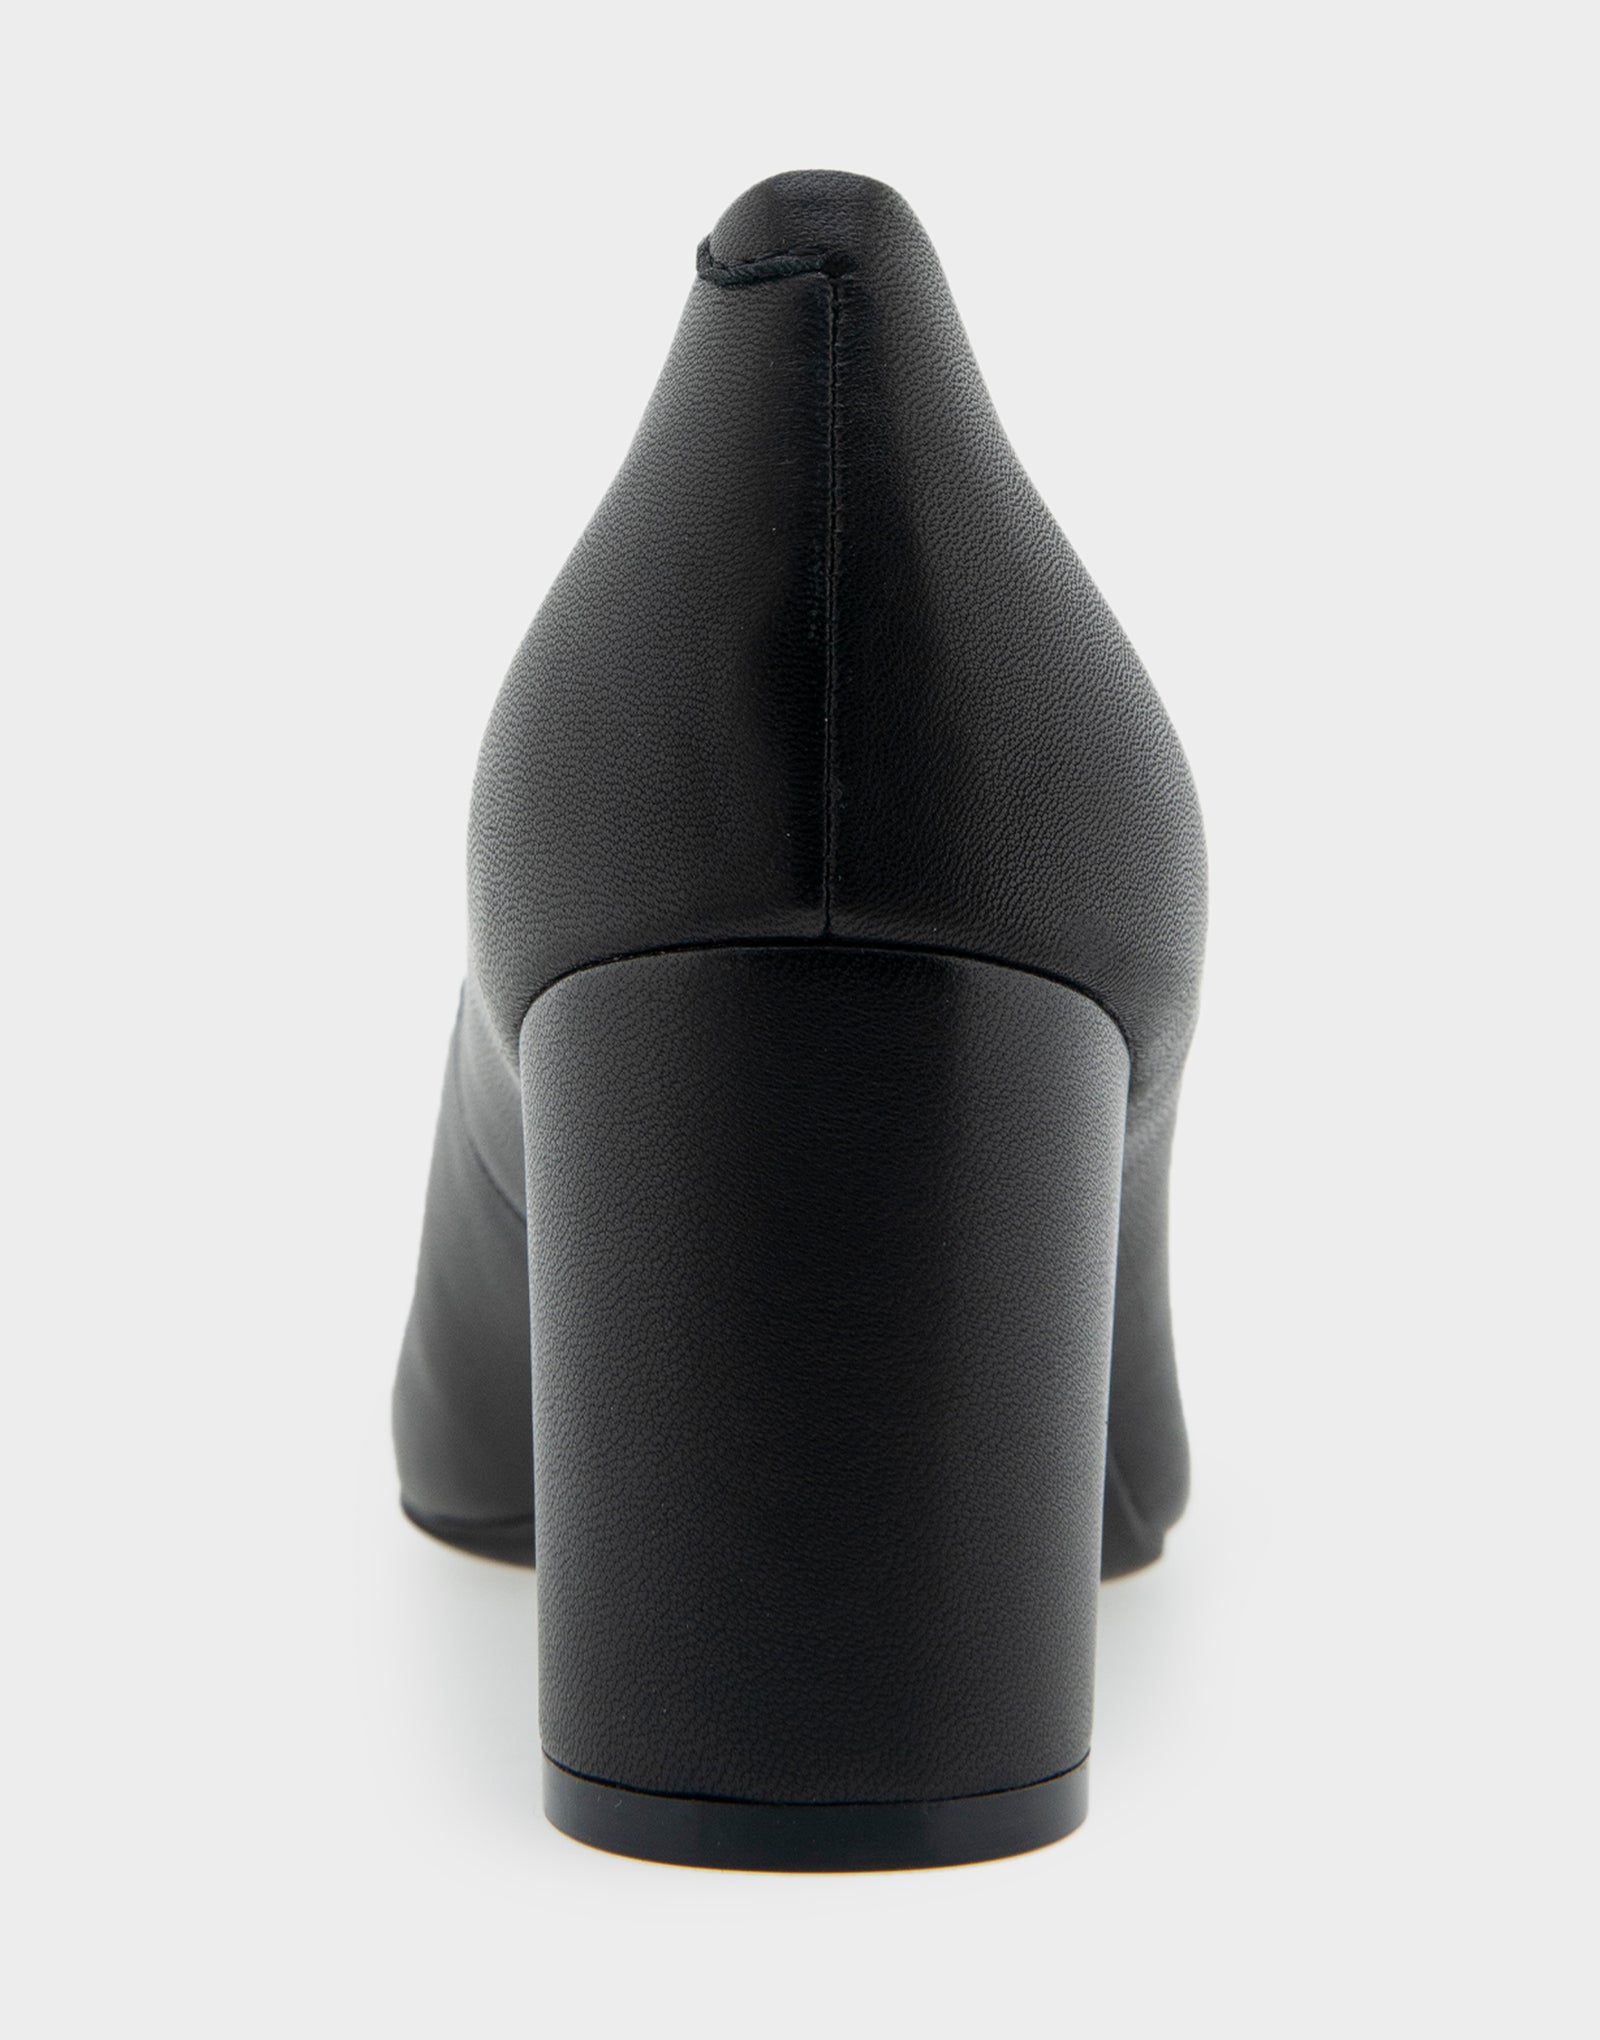 Women's Mid Heel Pump in Black